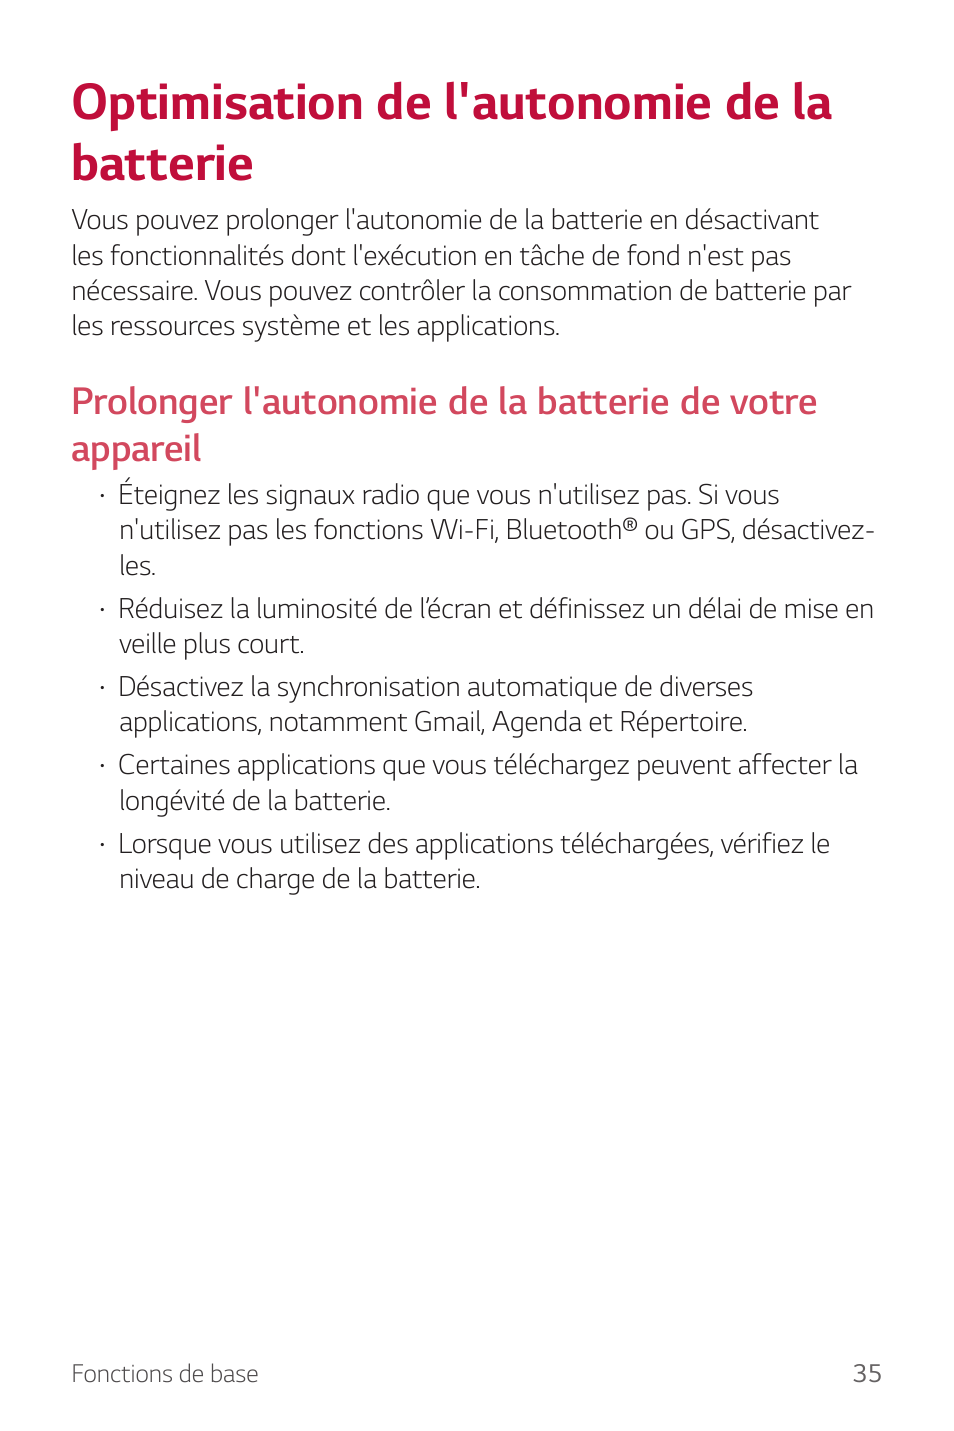 Optimisation de l'autonomie de la batterie | LG Stylus 2 LG-K520 Manuel d'utilisation | Page 36 / 129